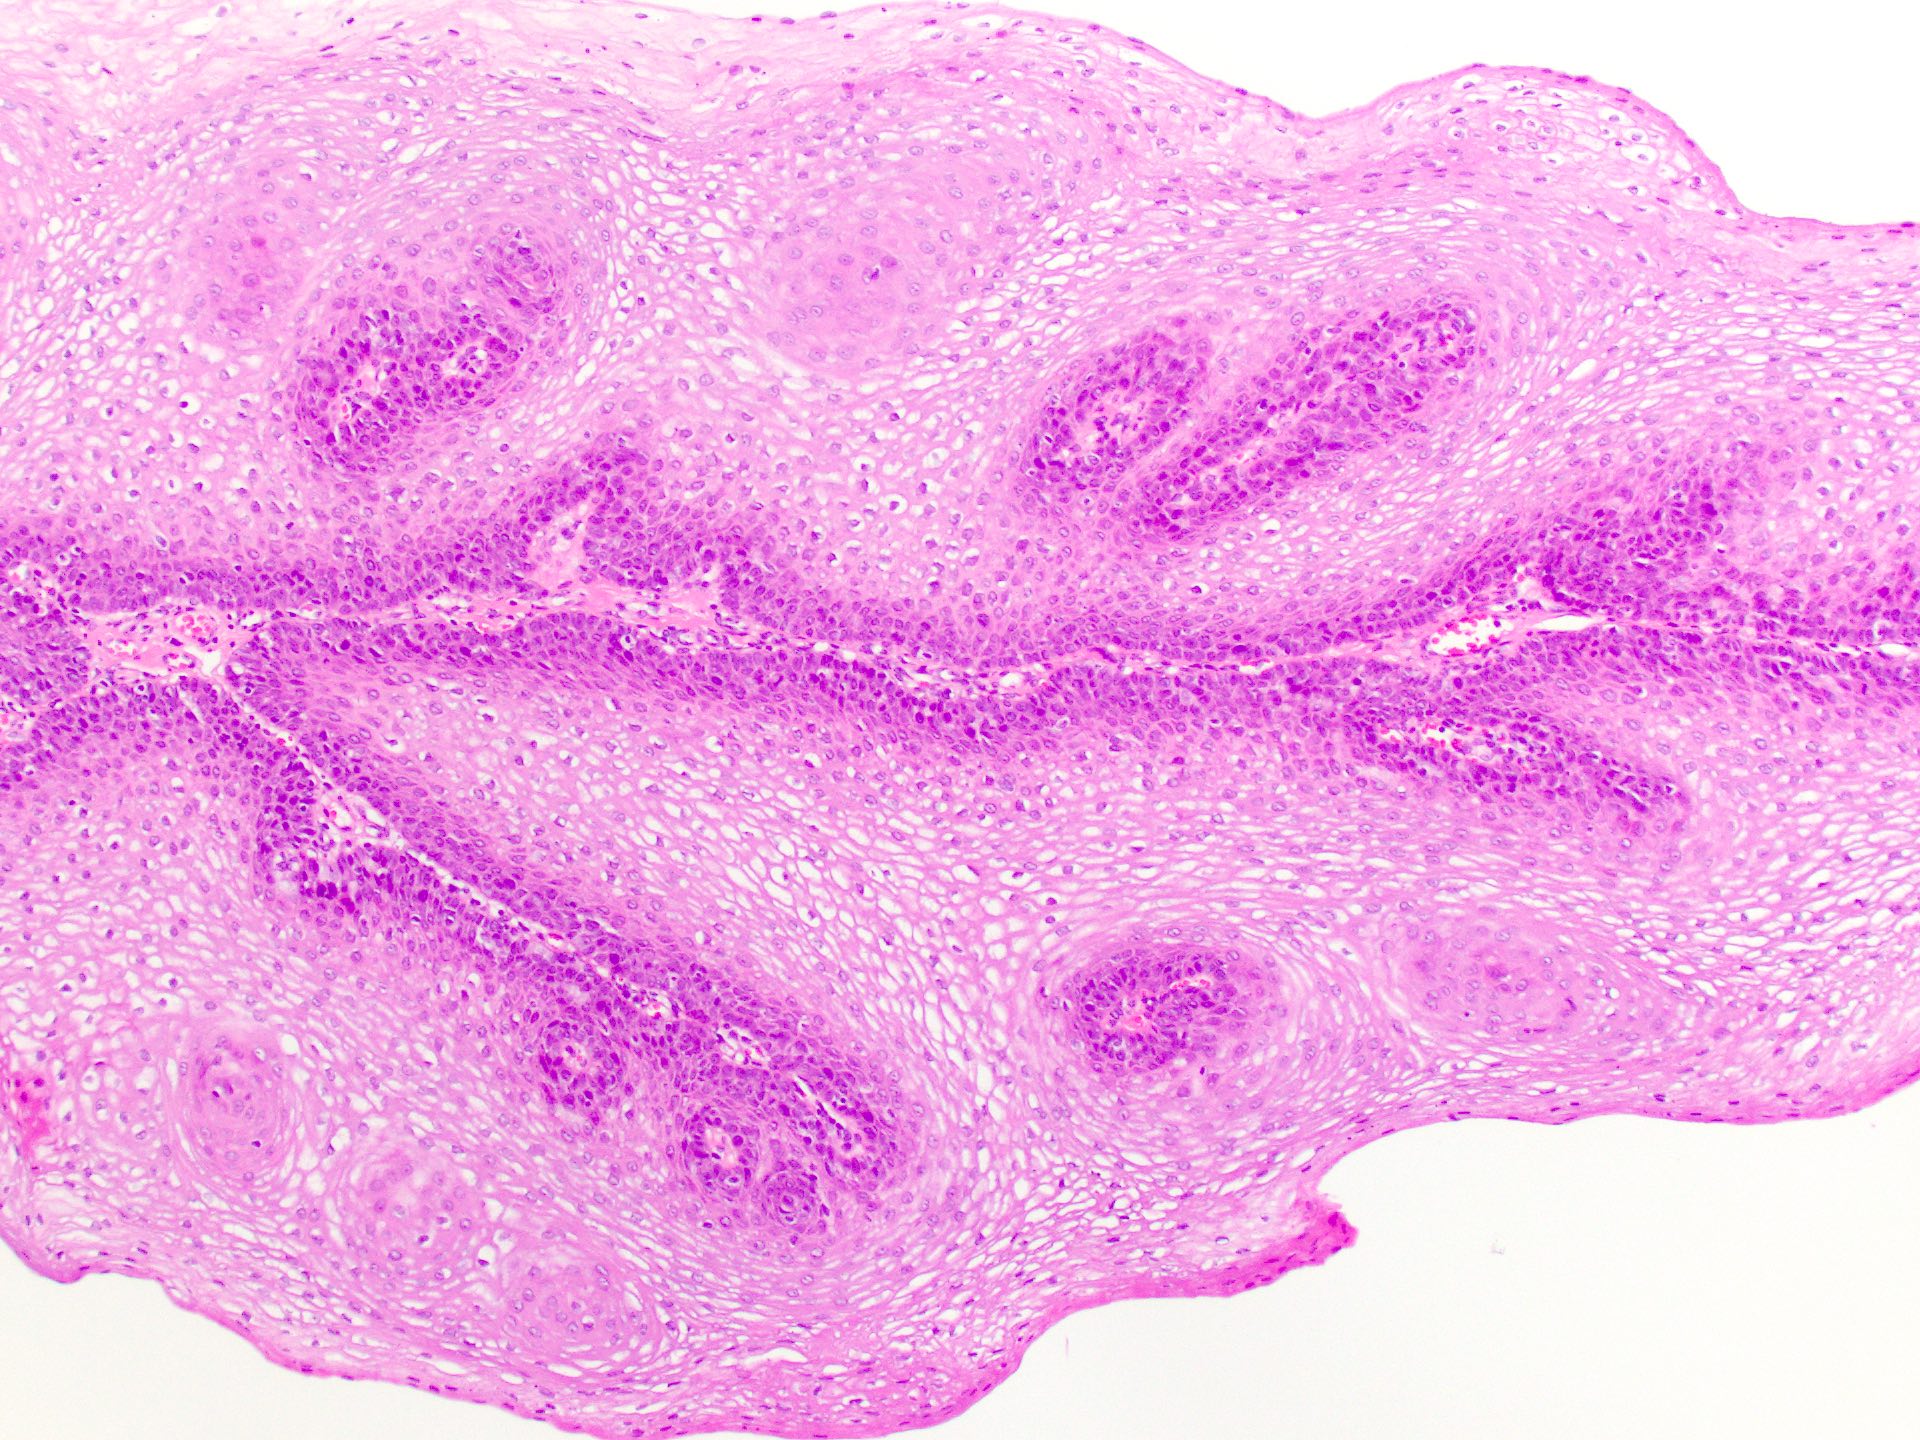 Squamous papilloma tongue pathology outlines